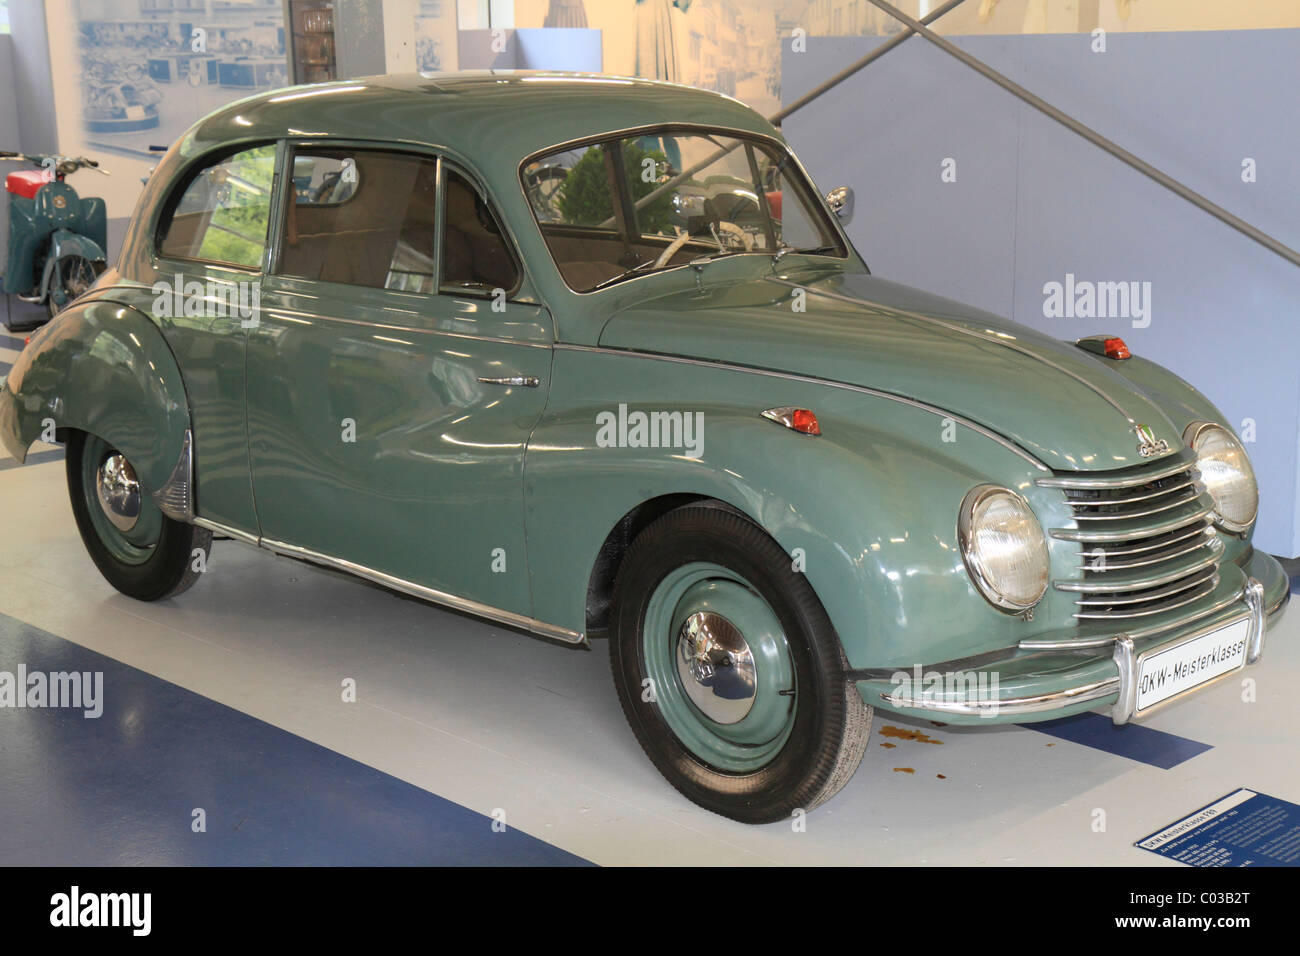 DKW Meisterklasse F89 vintage car, ErfinderZeiten: Auto- und Uhrenmuseum, Time of Innovators: Museum of Cars and Clocks Stock Photo